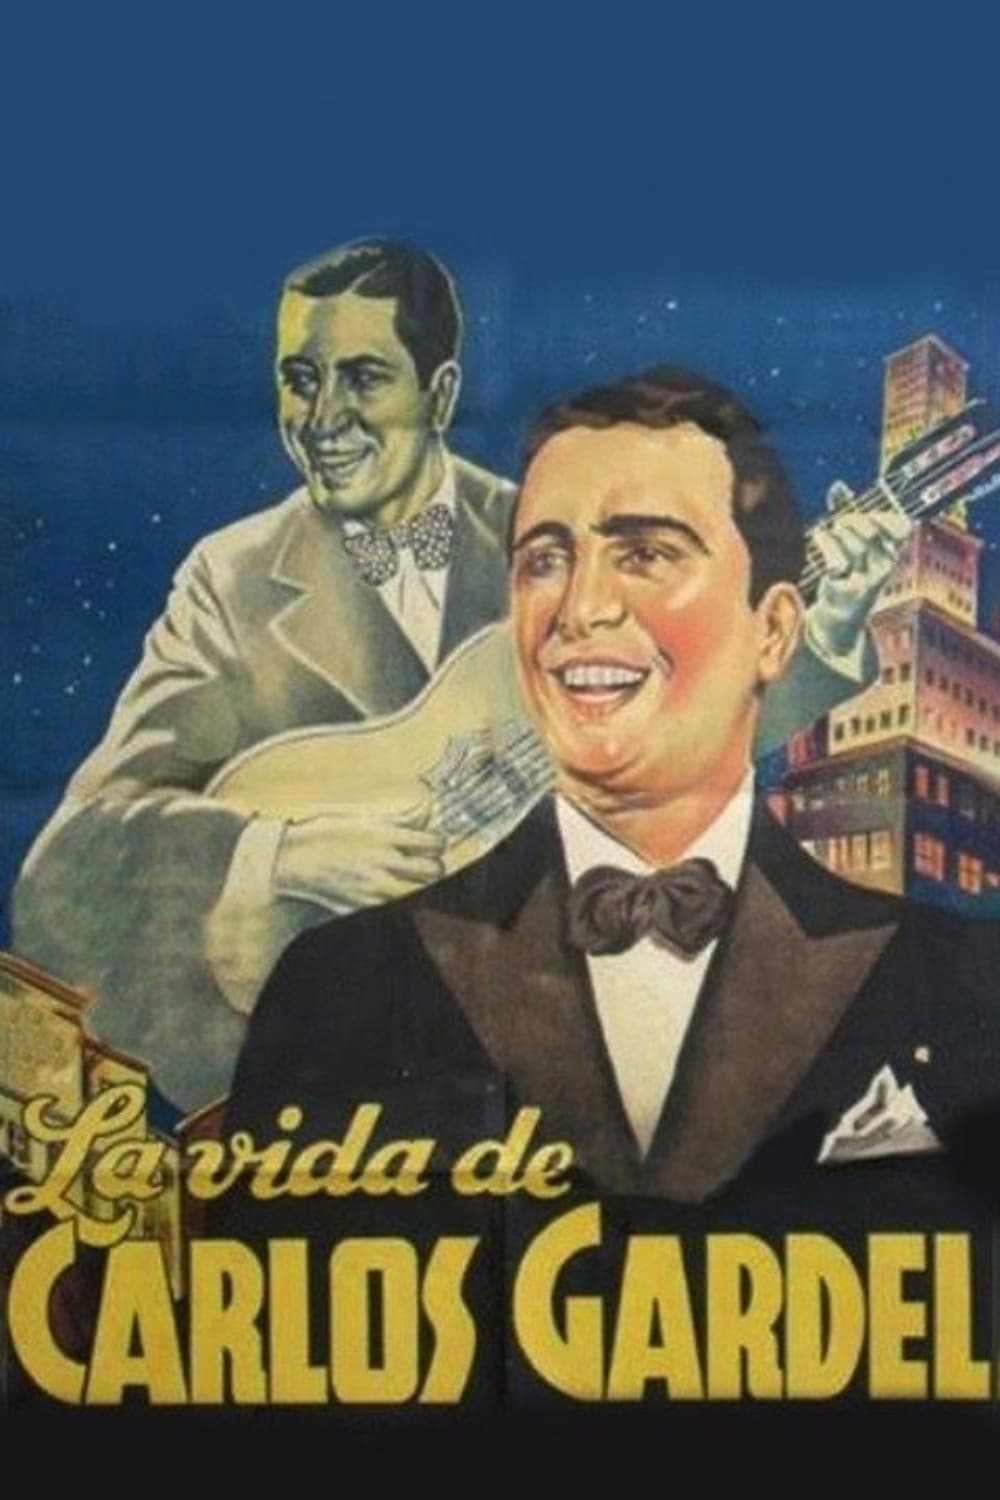 La vida de Carlos Gardel (1939)